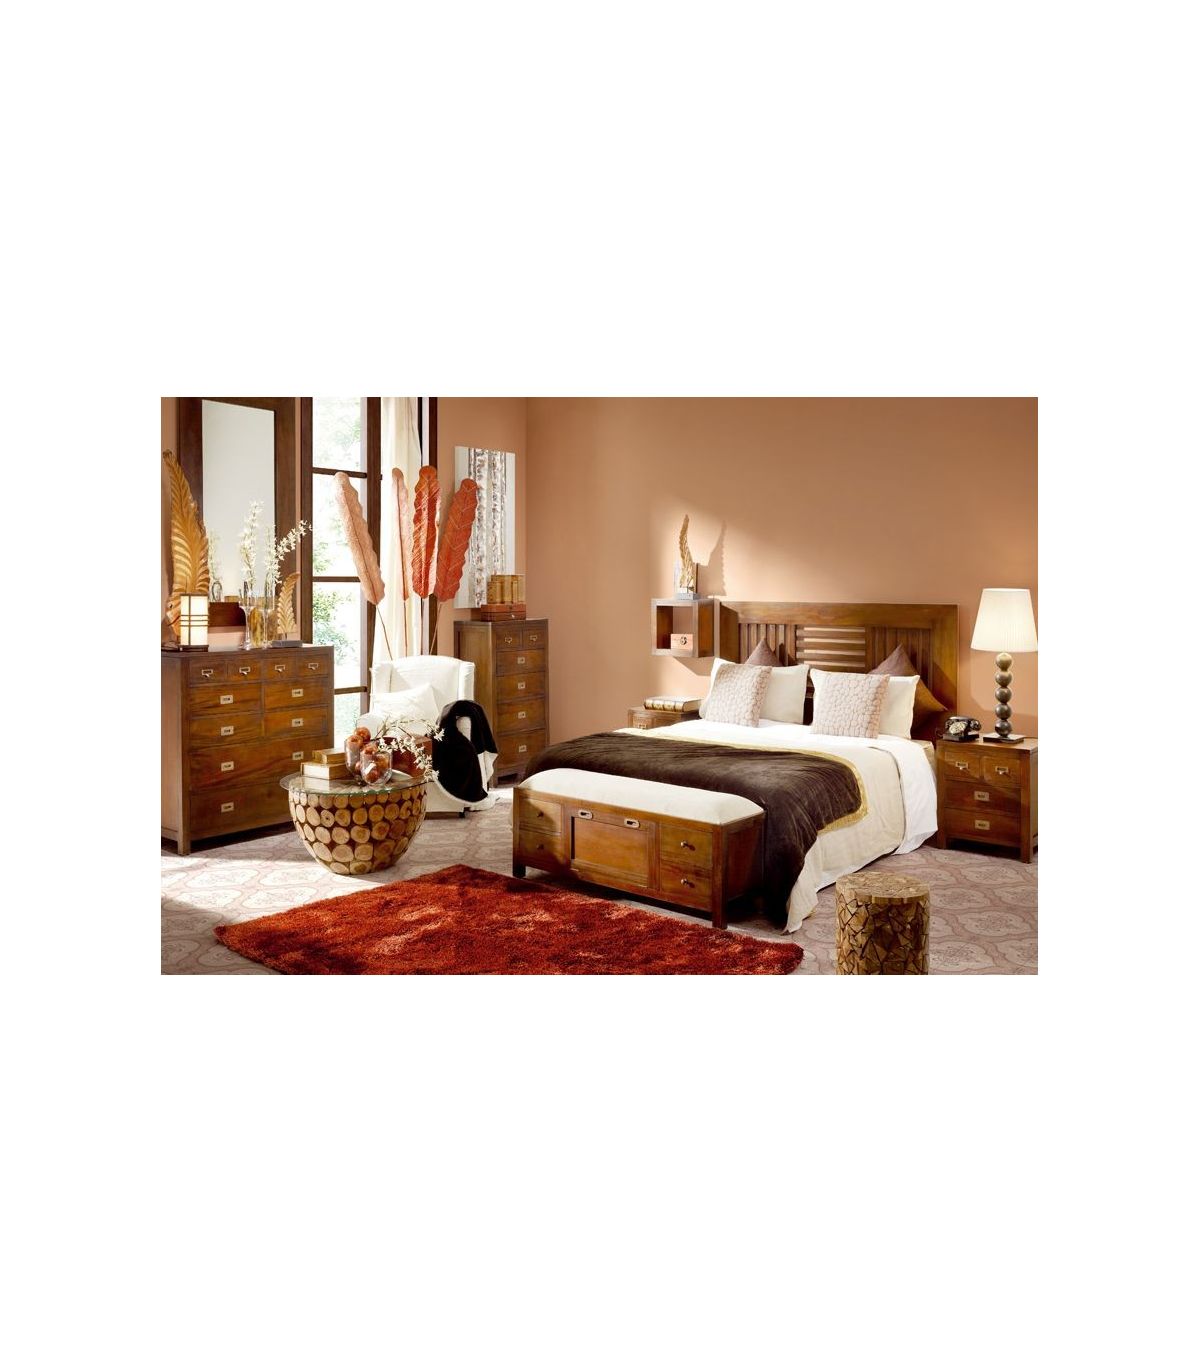 Natura Cabecero de cama madera natural - Dormitorios matrimonio